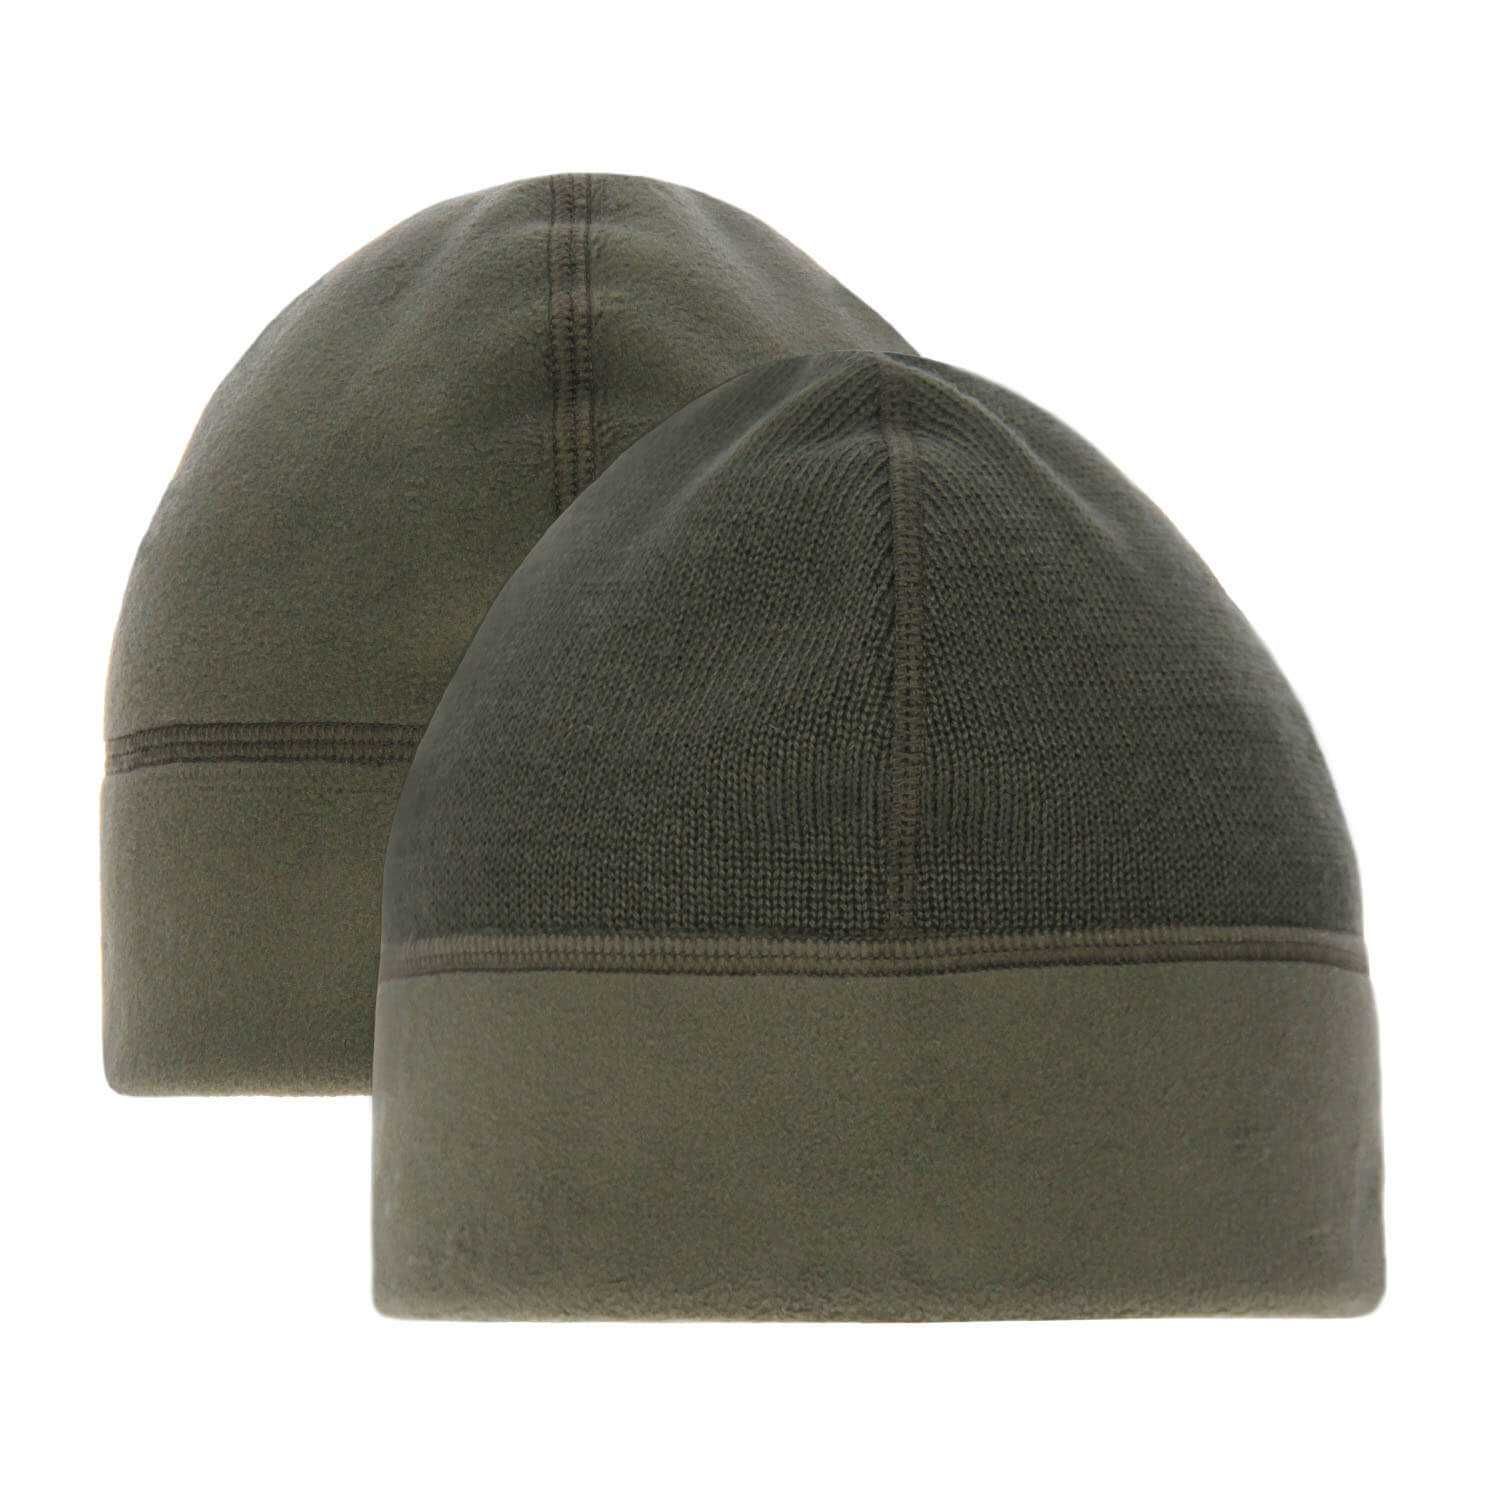 Wojskowa czapka zimowa khaki wzór 420z/mon rozmiar 54-55